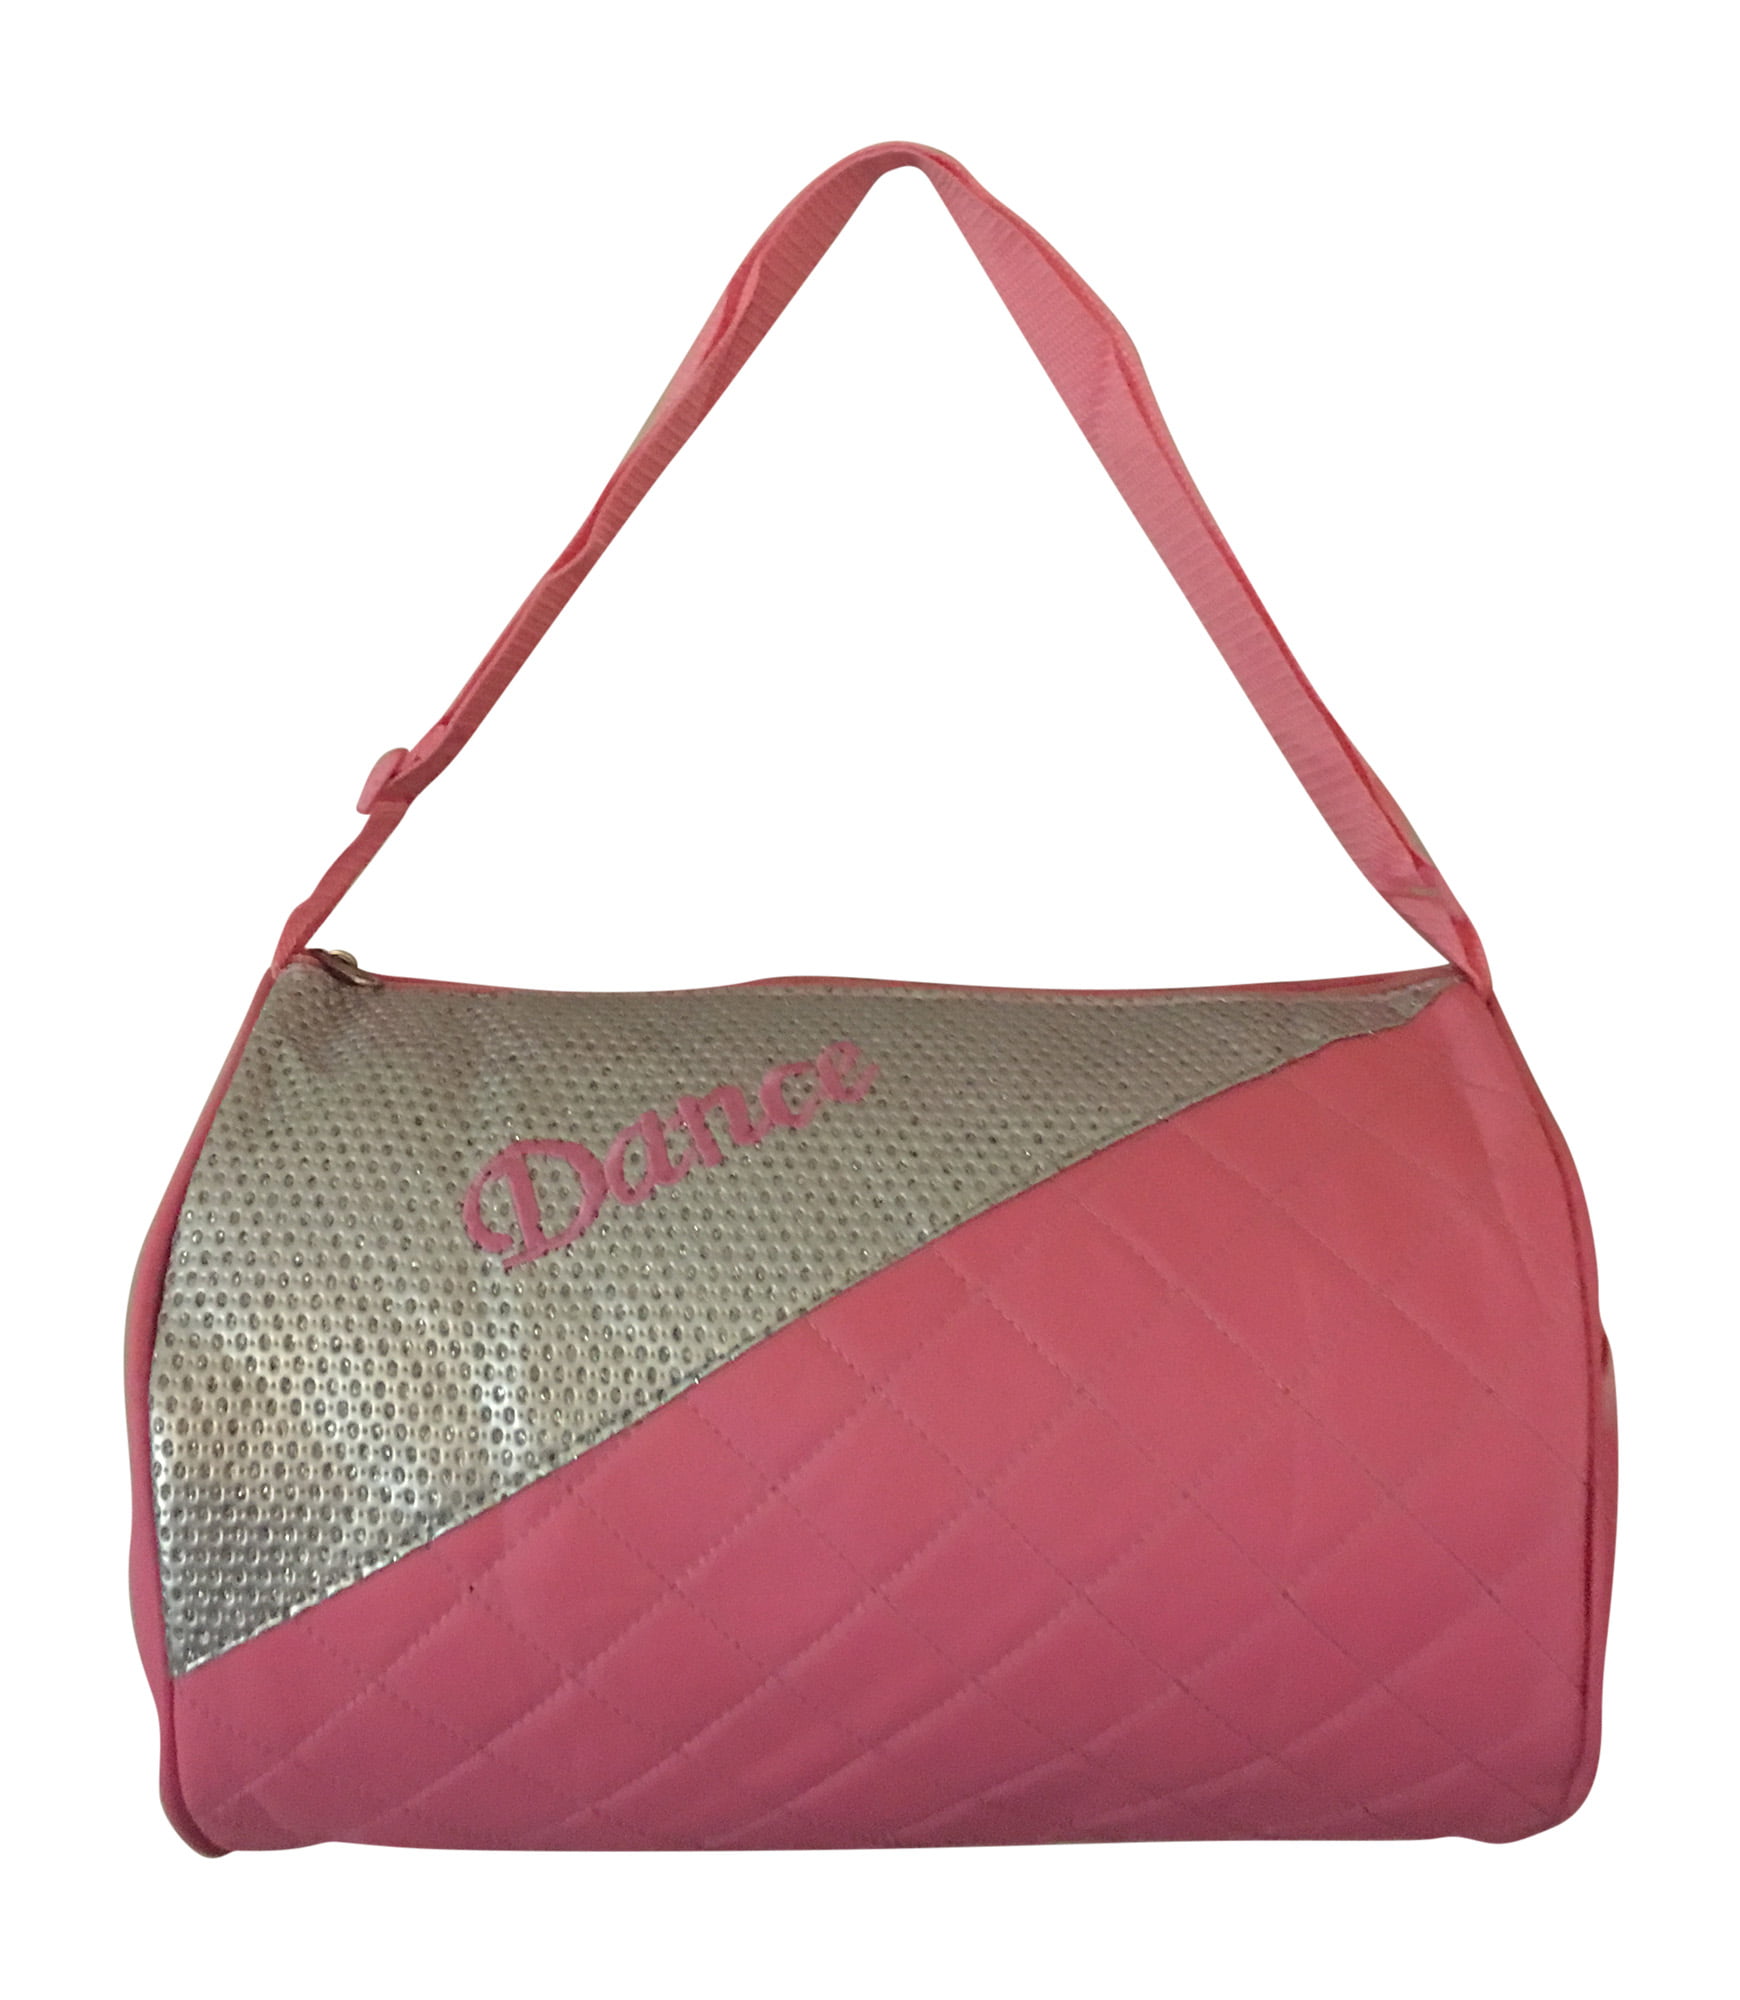 Girls Dance Duffle Bag Pink with Adjustable Shoulder Strap - www.bagsaleusa.com